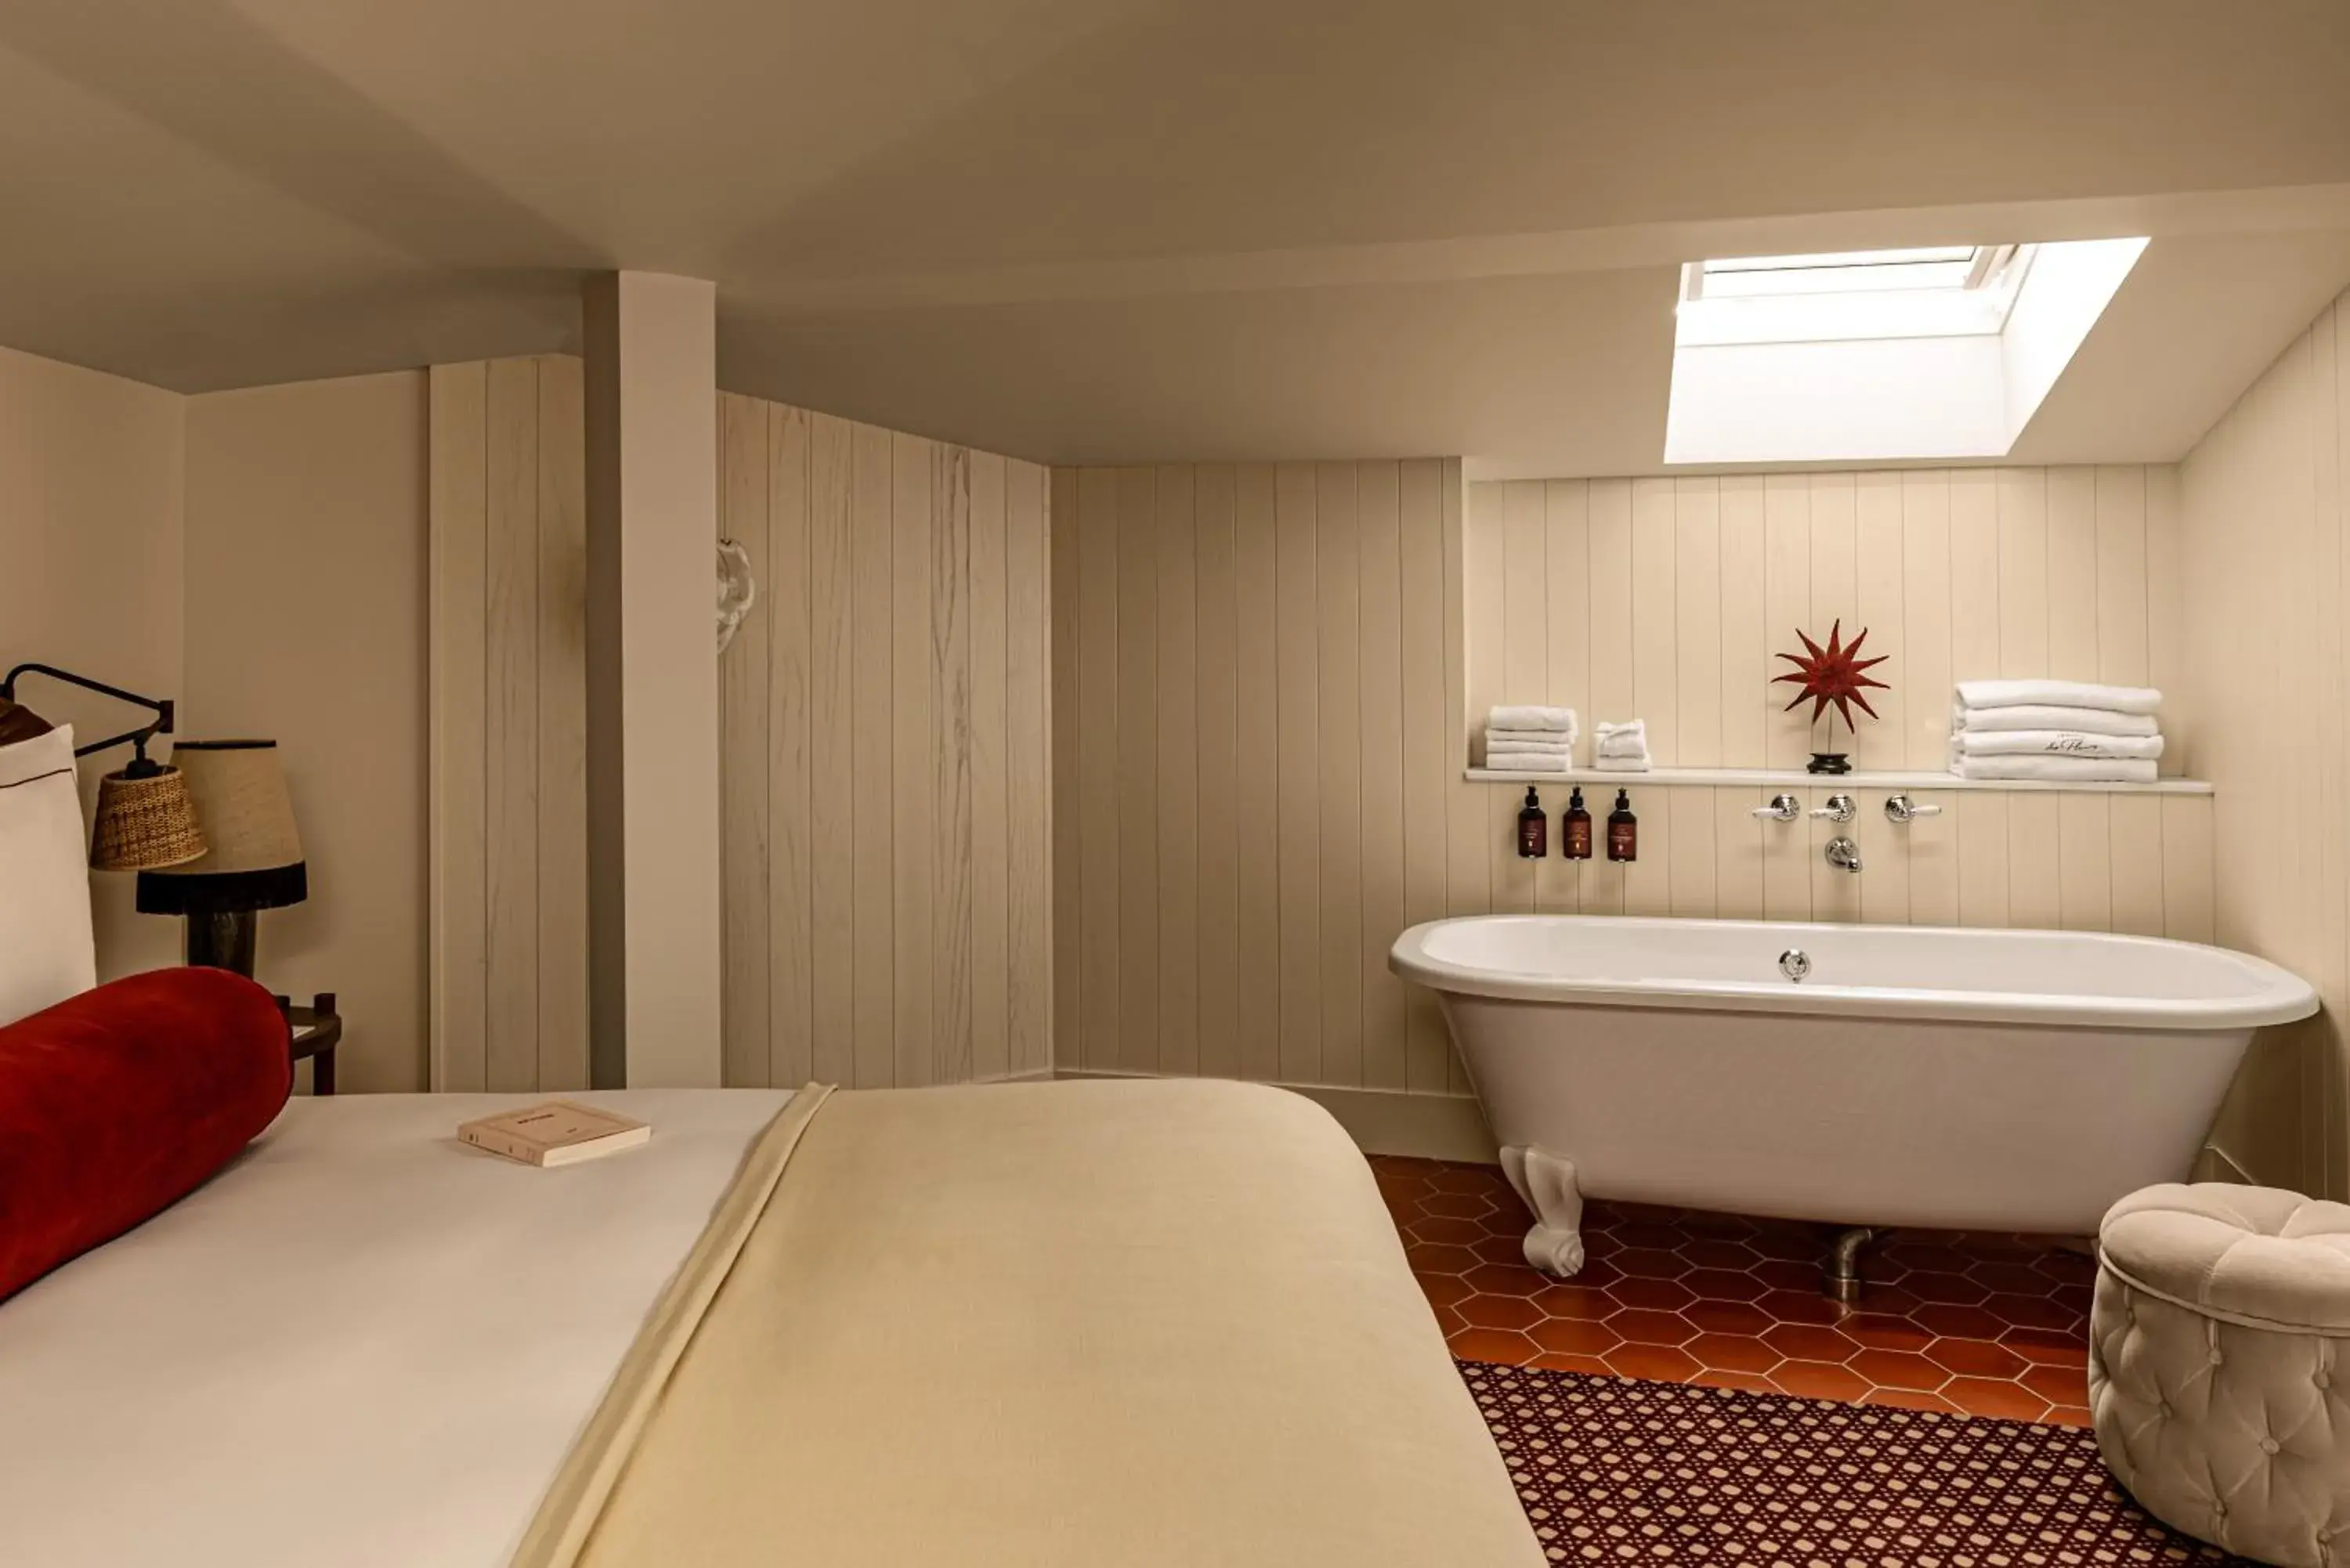 Bedroom, Bathroom in Château des Fleurs - Hôtel & Spa - Paris Champs-Elysées